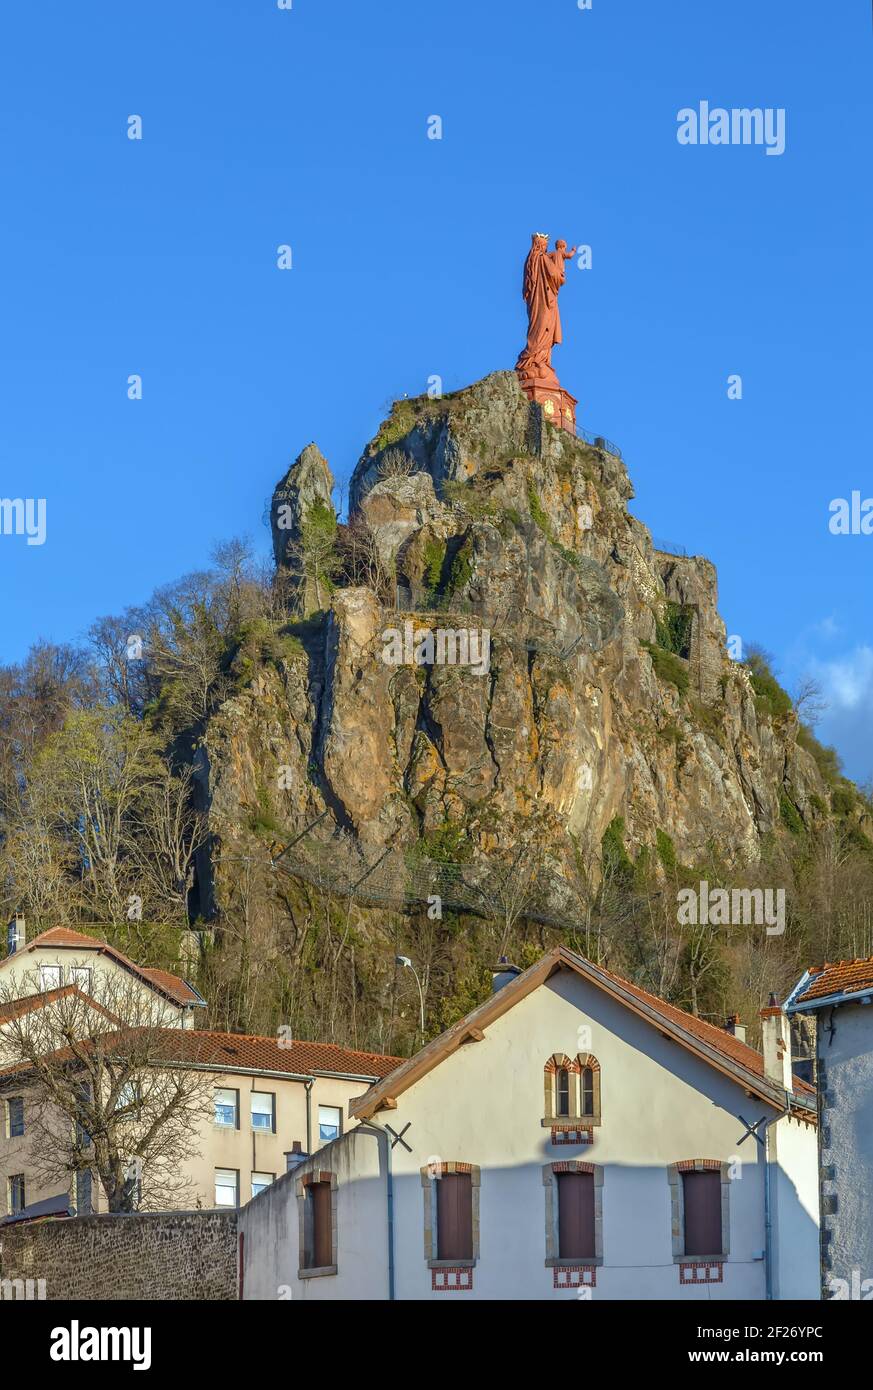 Statue de notre-Dame de France, le Puy-en-Velay, France Banque D'Images